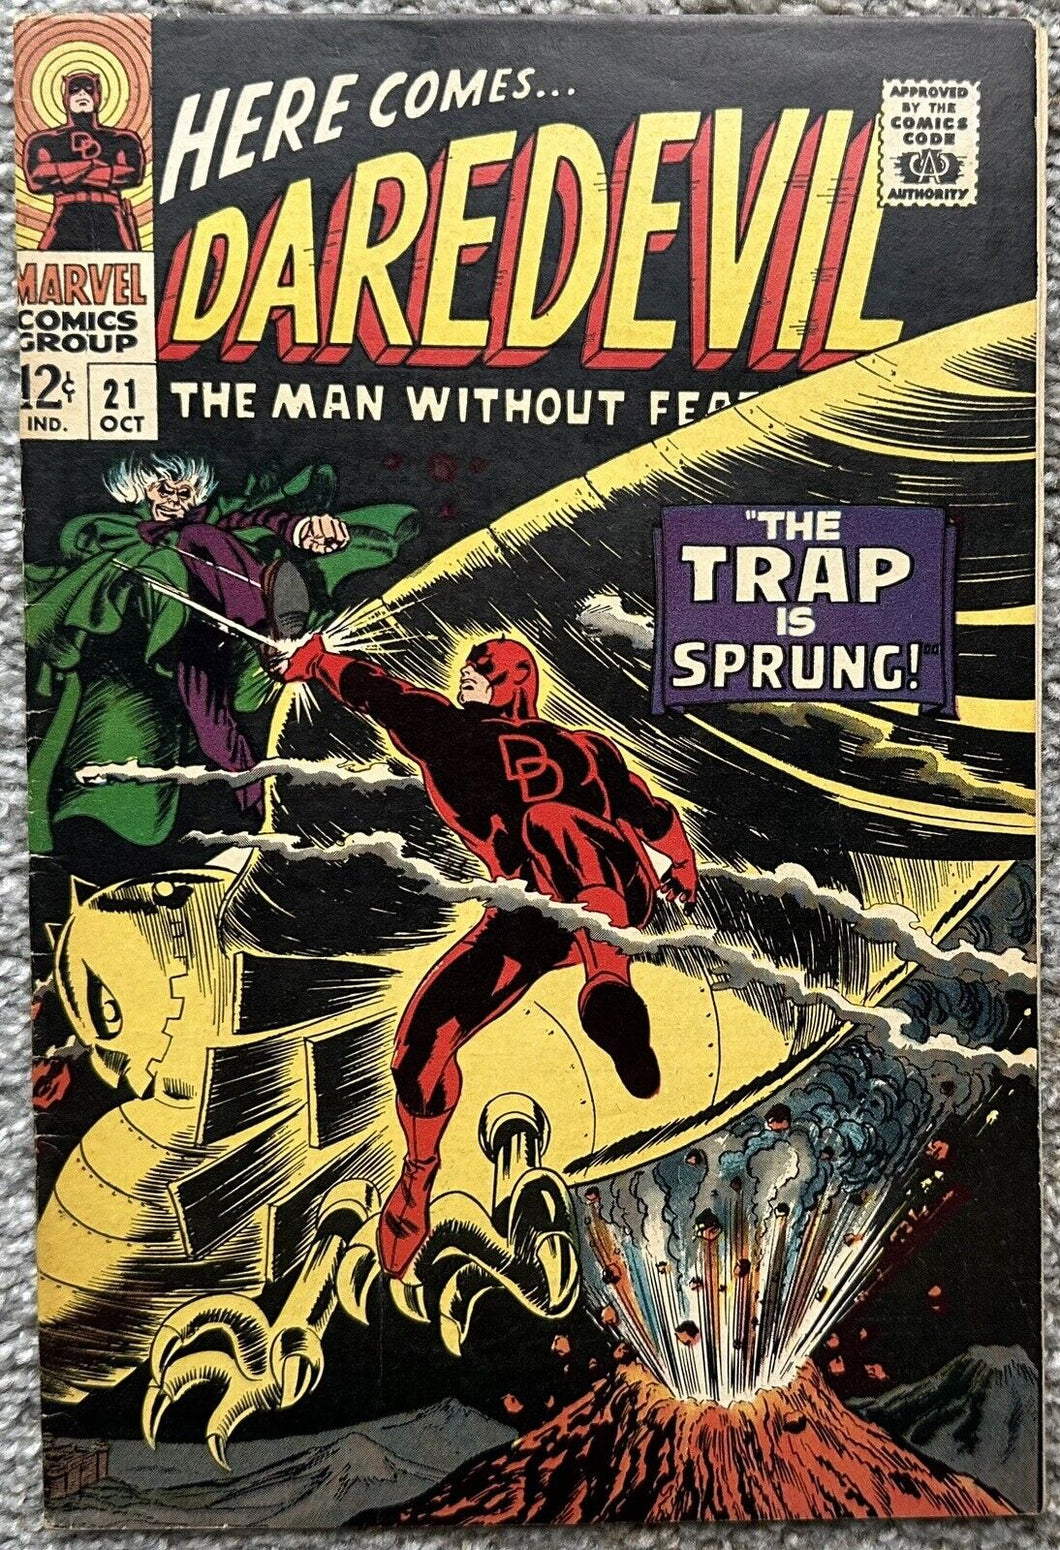 DAREDEVIL #21 (MARVEL,1966)  Daredevil battles the Owl.